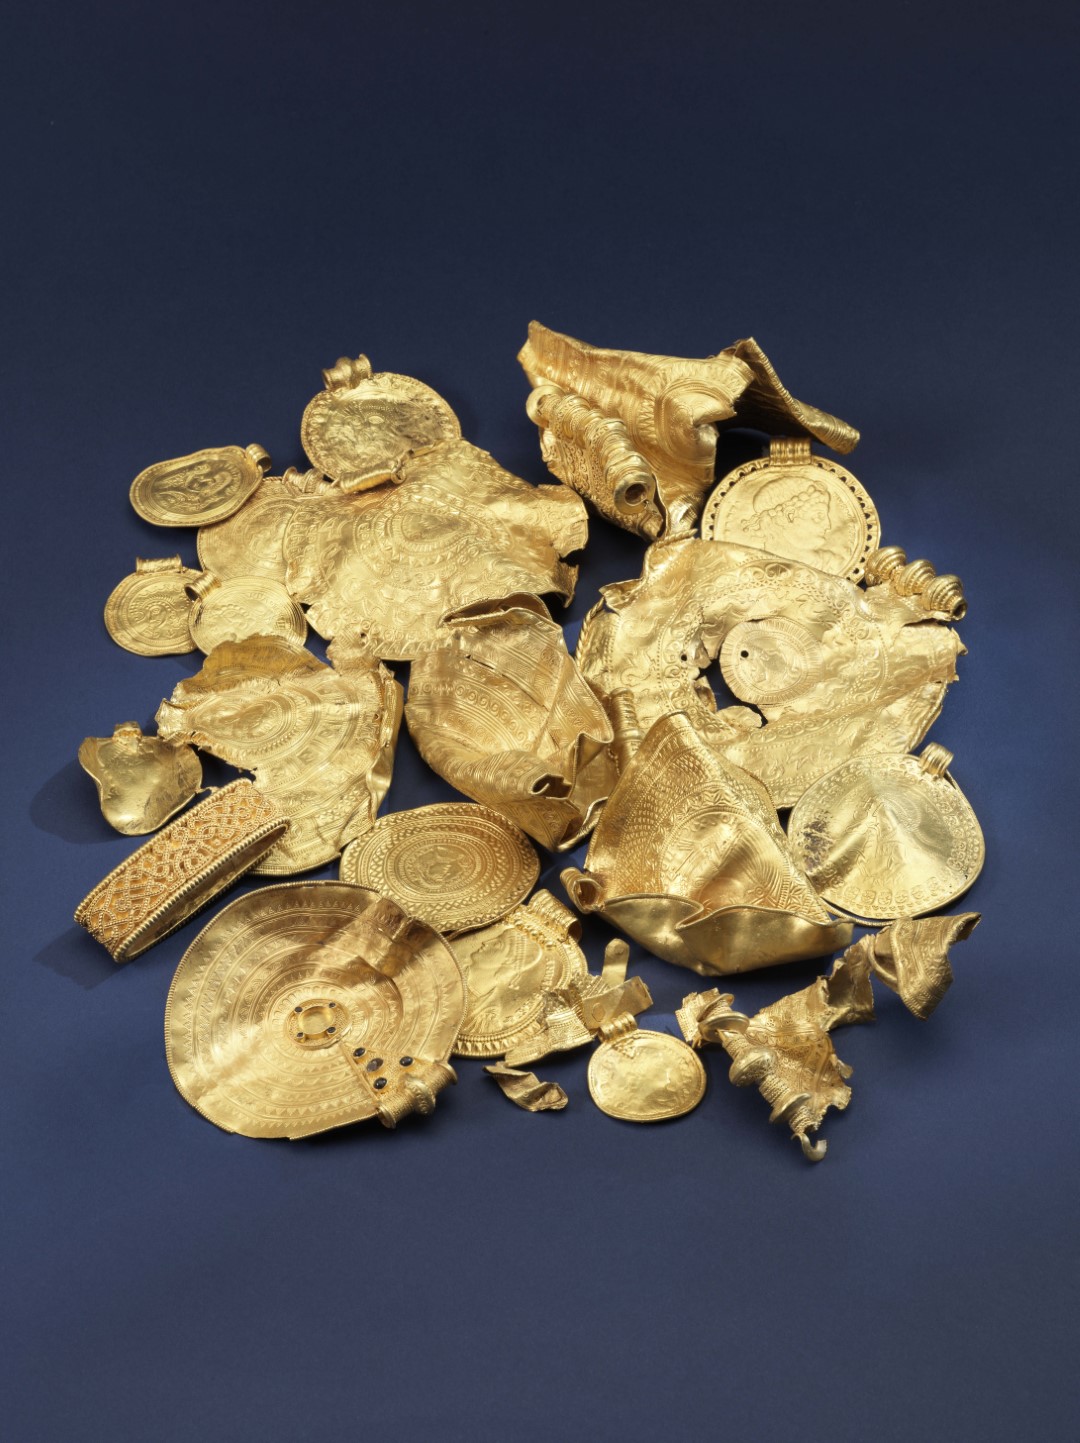 Studie detektorového nálezu zlatého římského pokladu odhaluje síť evropských elit